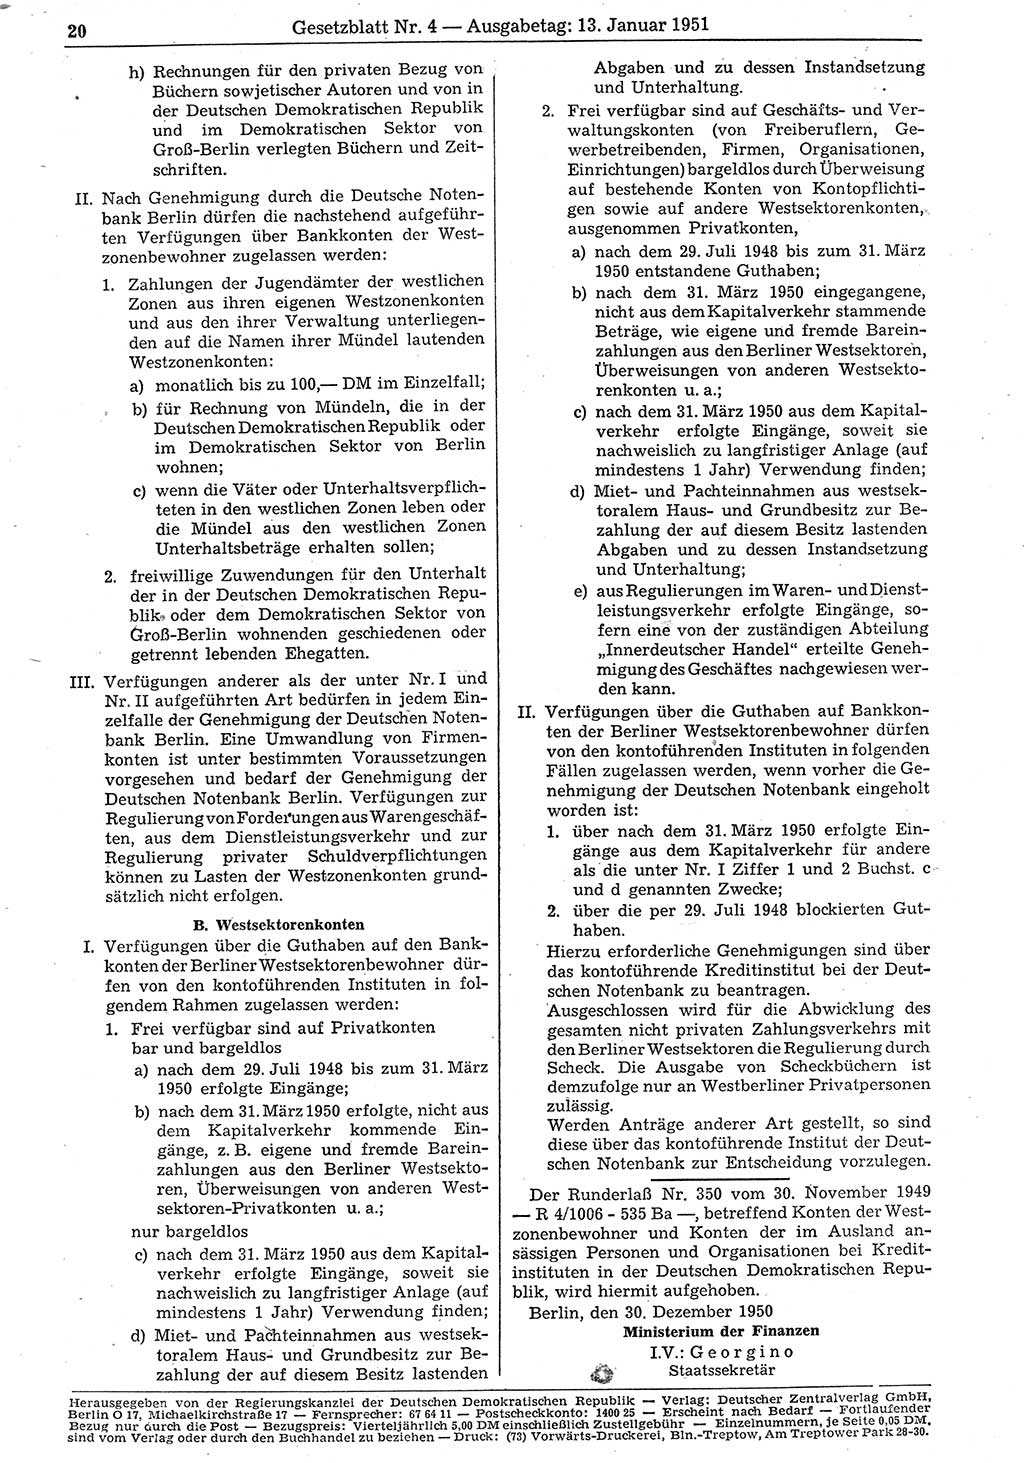 Gesetzblatt (GBl.) der Deutschen Demokratischen Republik (DDR) 1951, Seite 20 (GBl. DDR 1951, S. 20)